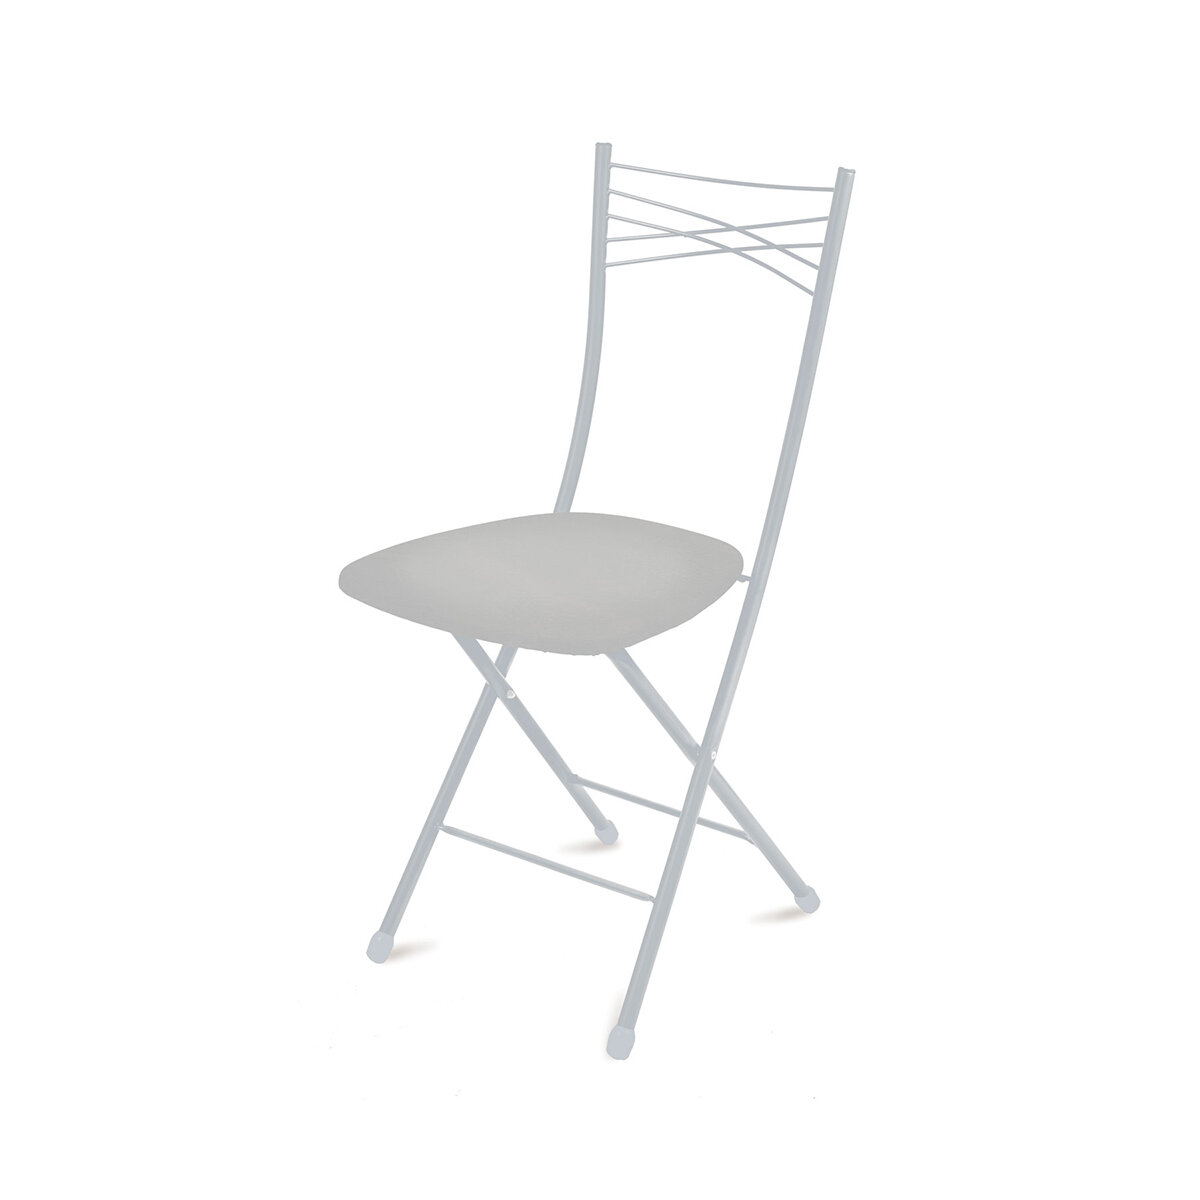 Стул складной Nika Ника 1, сиденье 39,5 x 40 см, светло-серый/матовый серый